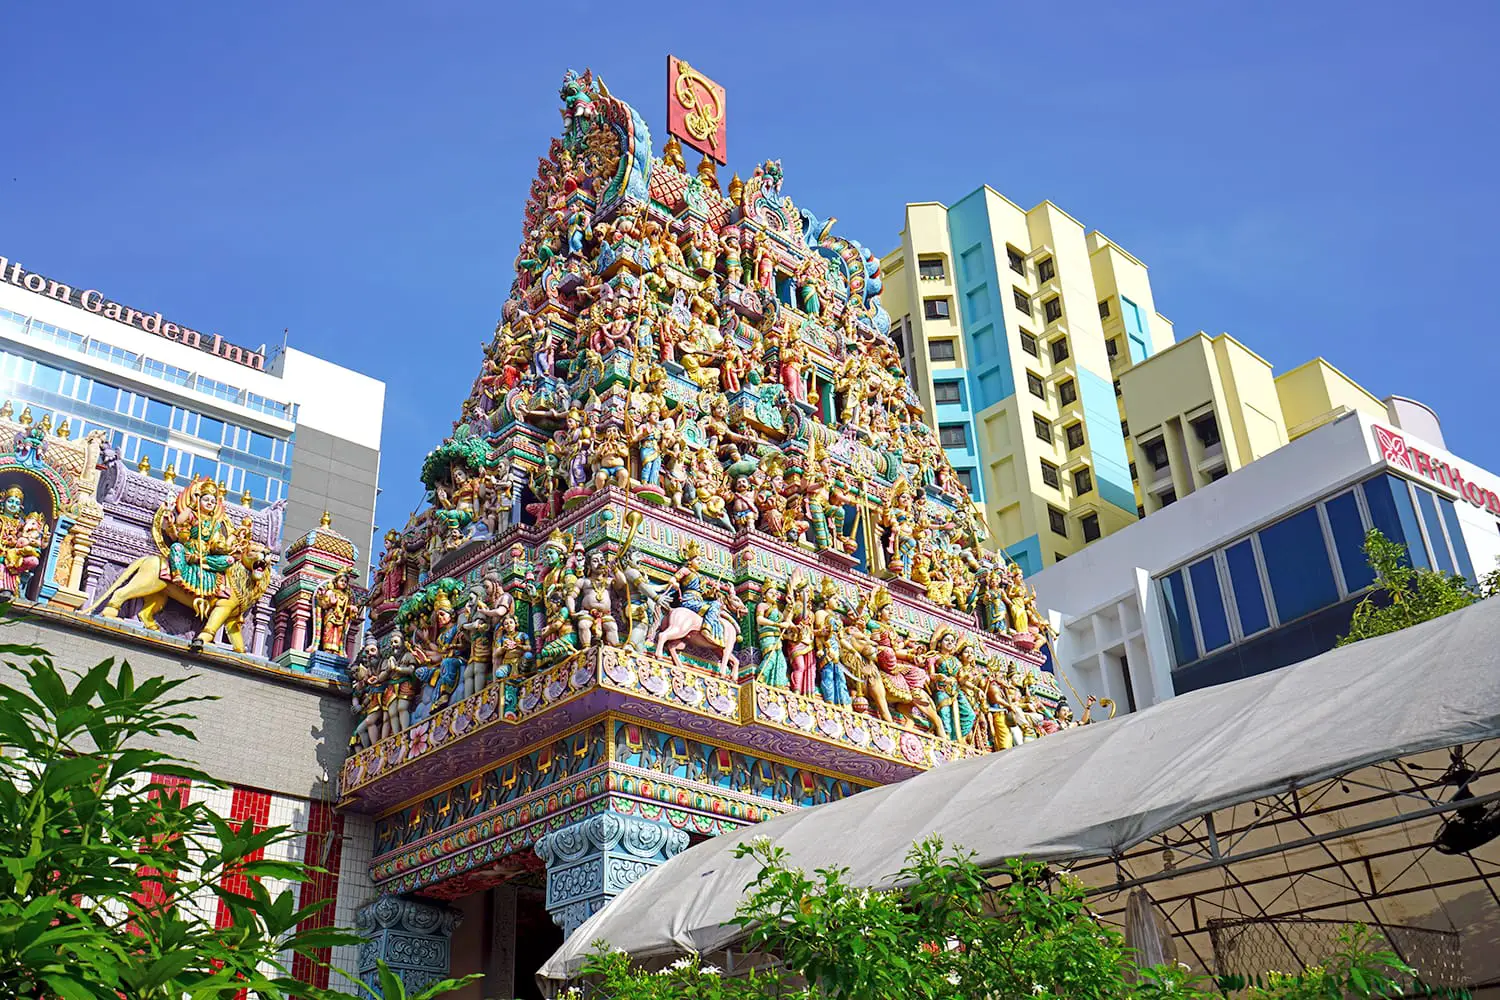 The Sri Veeramakaliamman Temple, located on Serangoon Street in Little India, Singapore